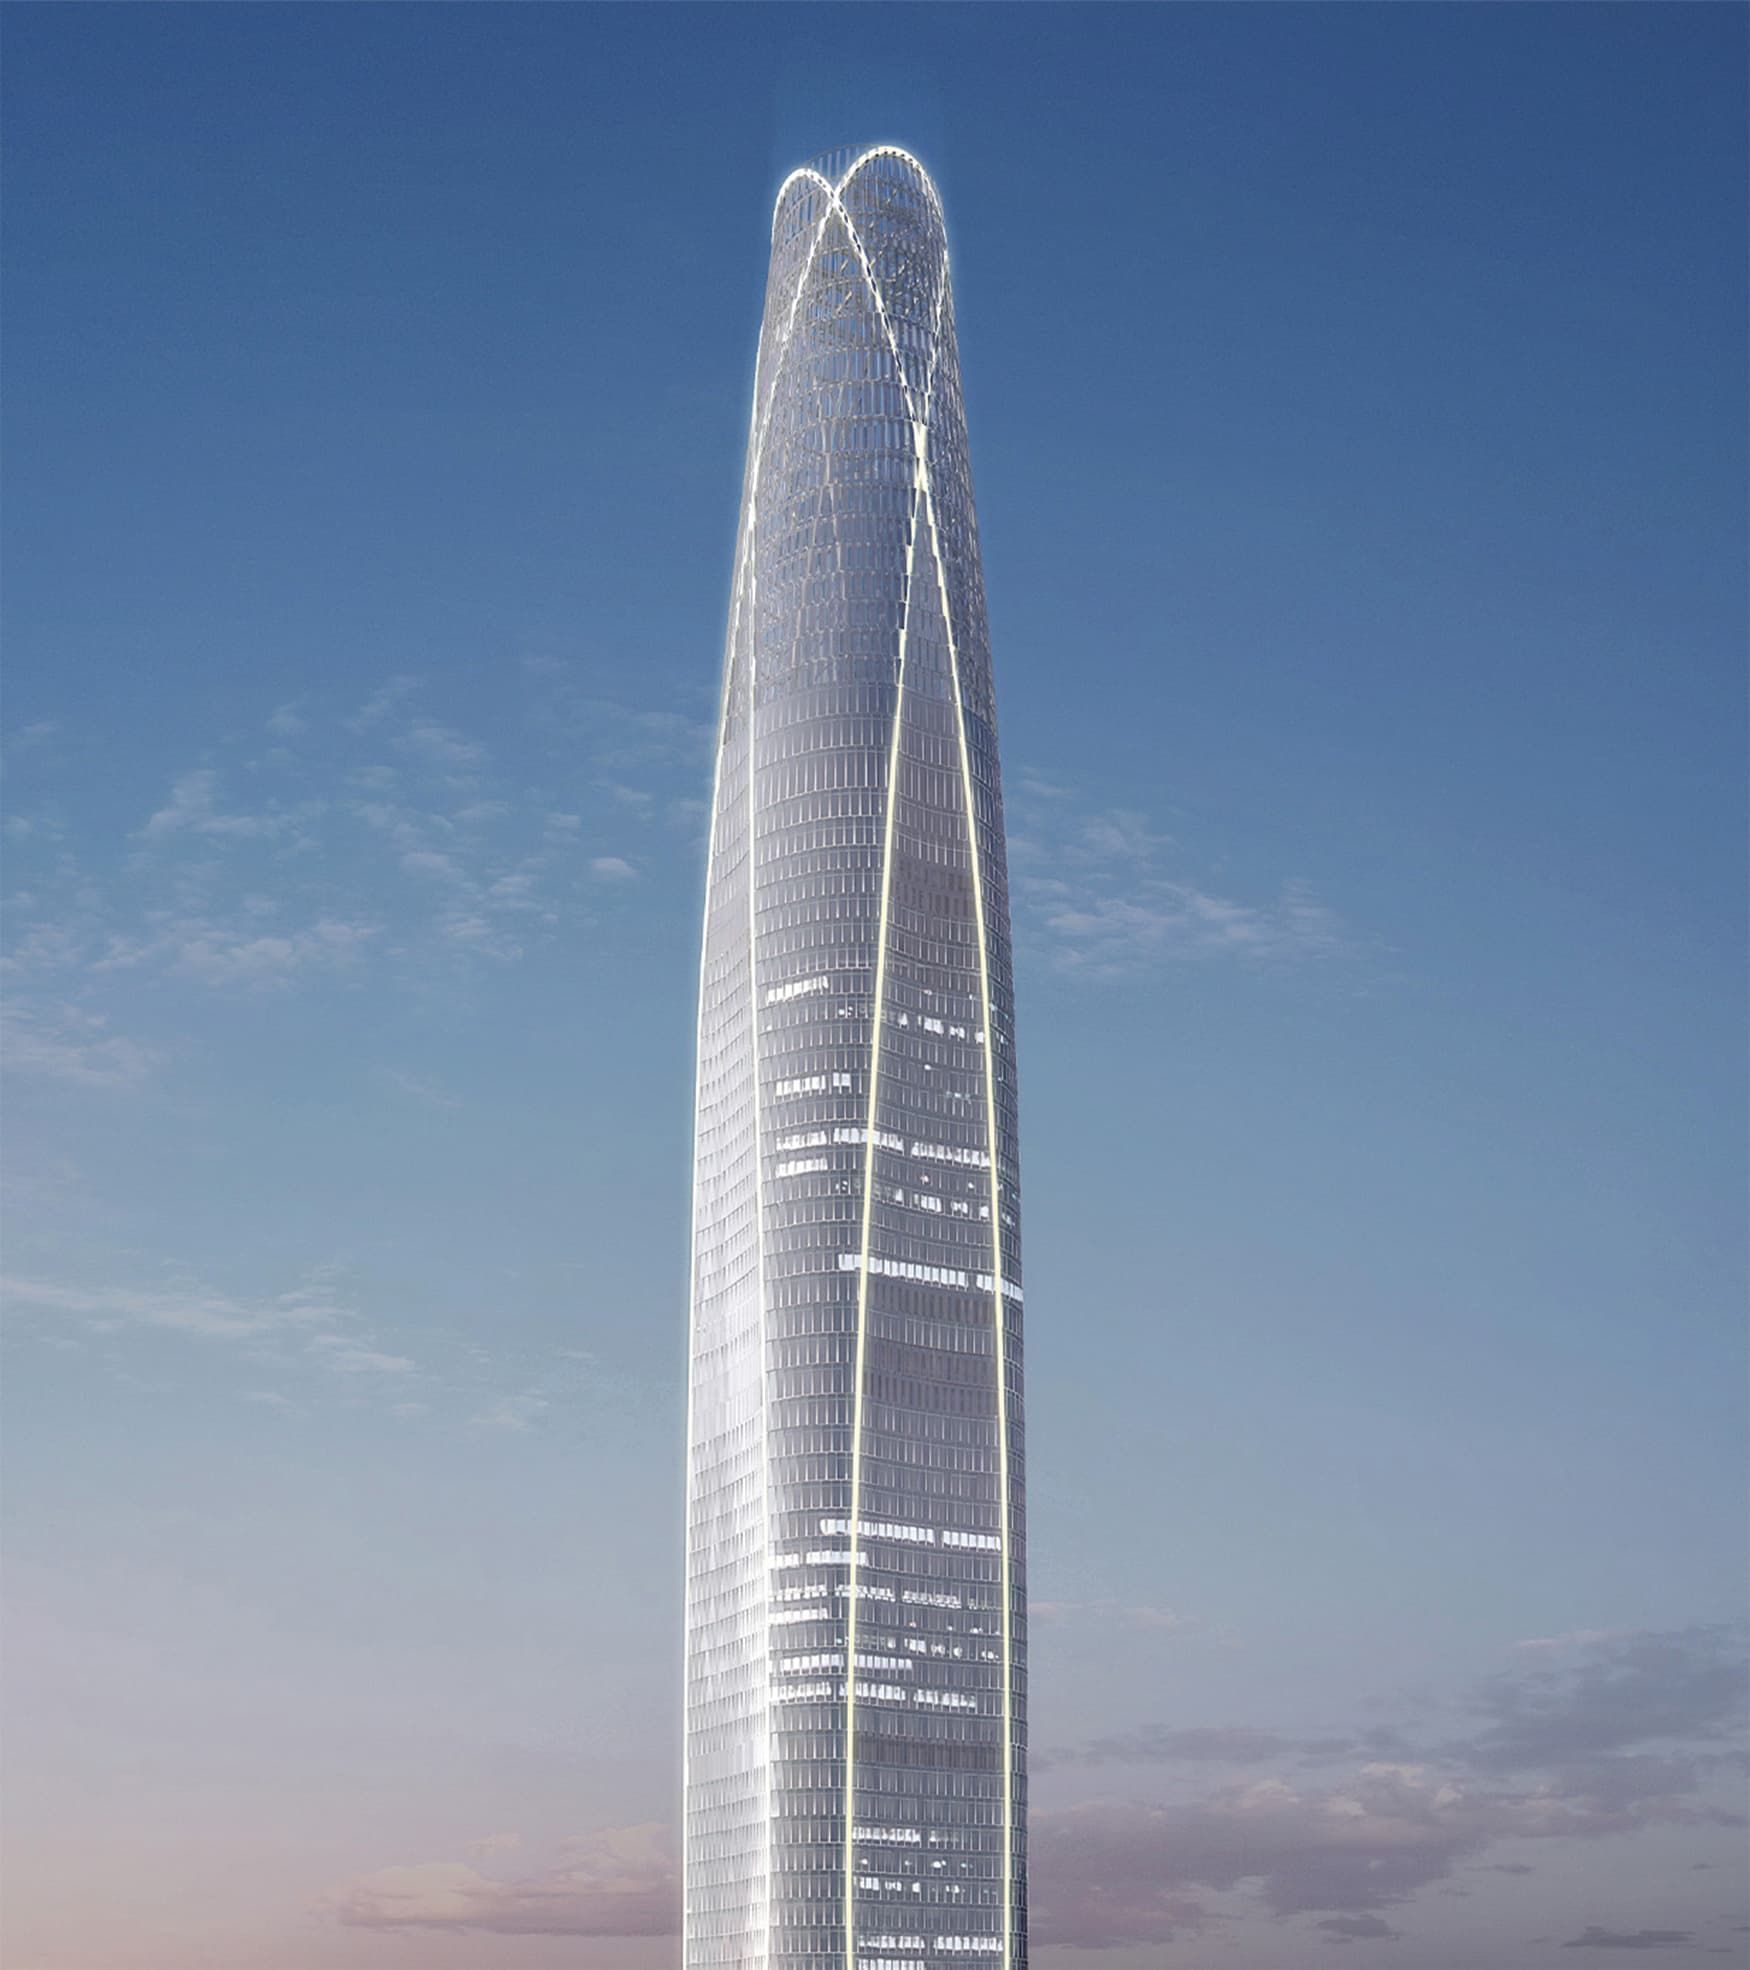 K11, located in Tianjin, China, is a super high-rise complex development